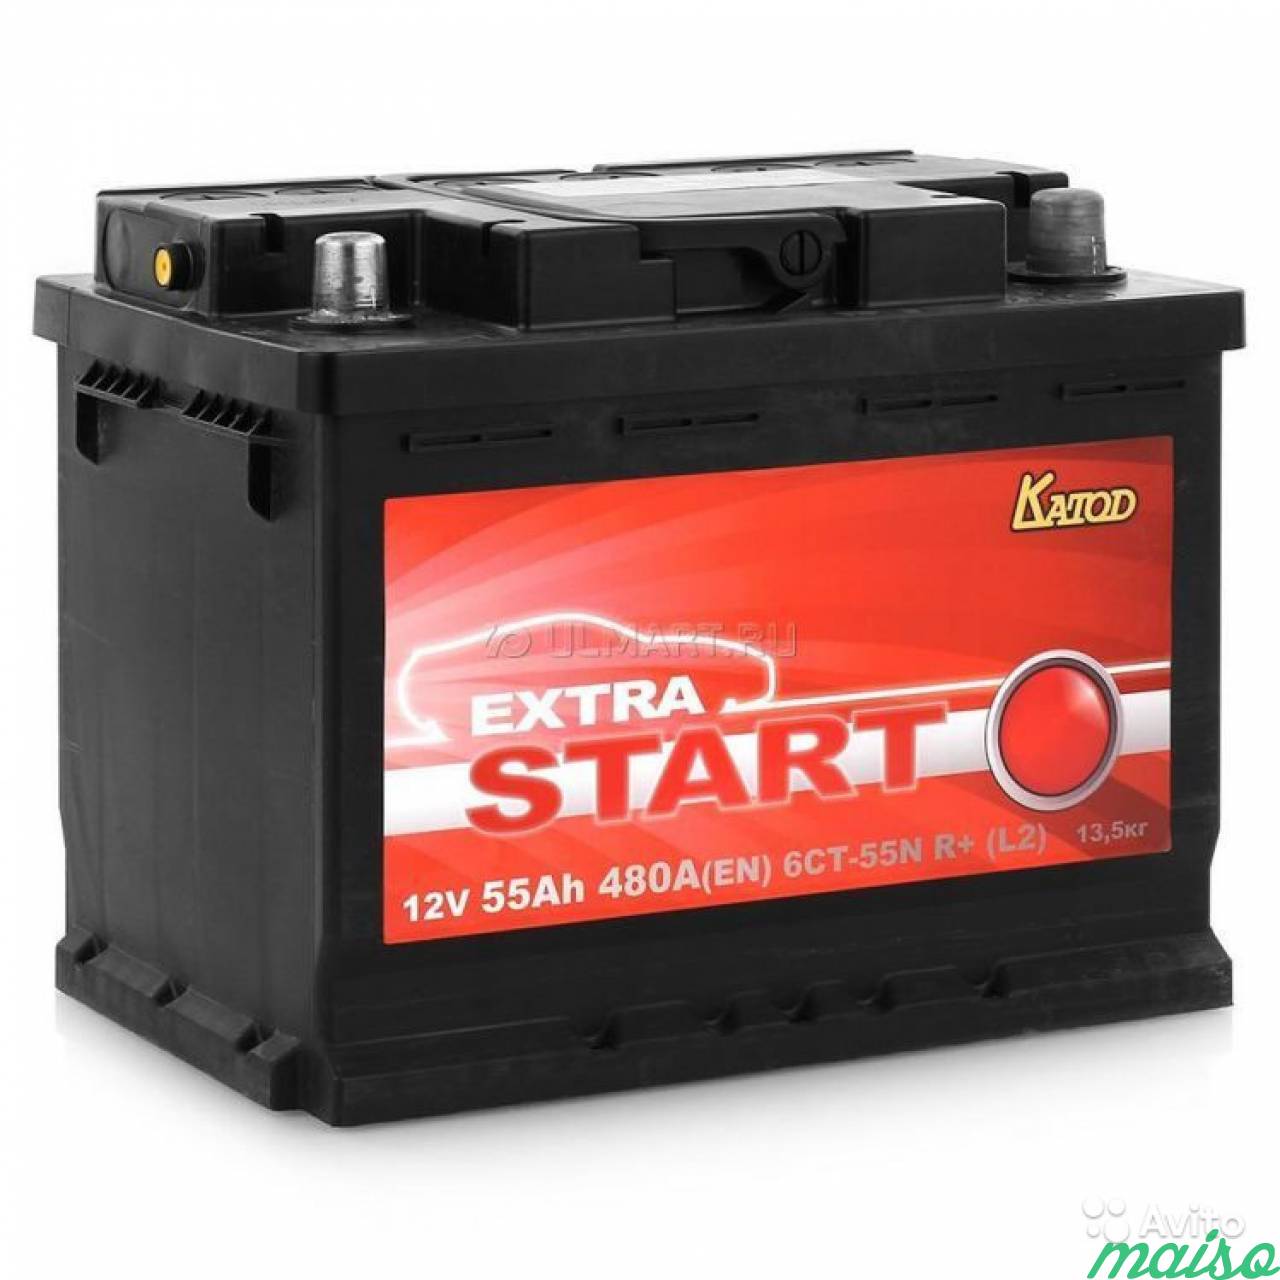 Первый автомобильный аккумулятор. Аккумулятор катод Extra start 6ст-60n l+ (l2). Аккумулятор автомобильный катод Extra start Extra start. Аккумулятор Extra start 6ст-55n r+. Катод Extra start Extra start 62ач 580a.